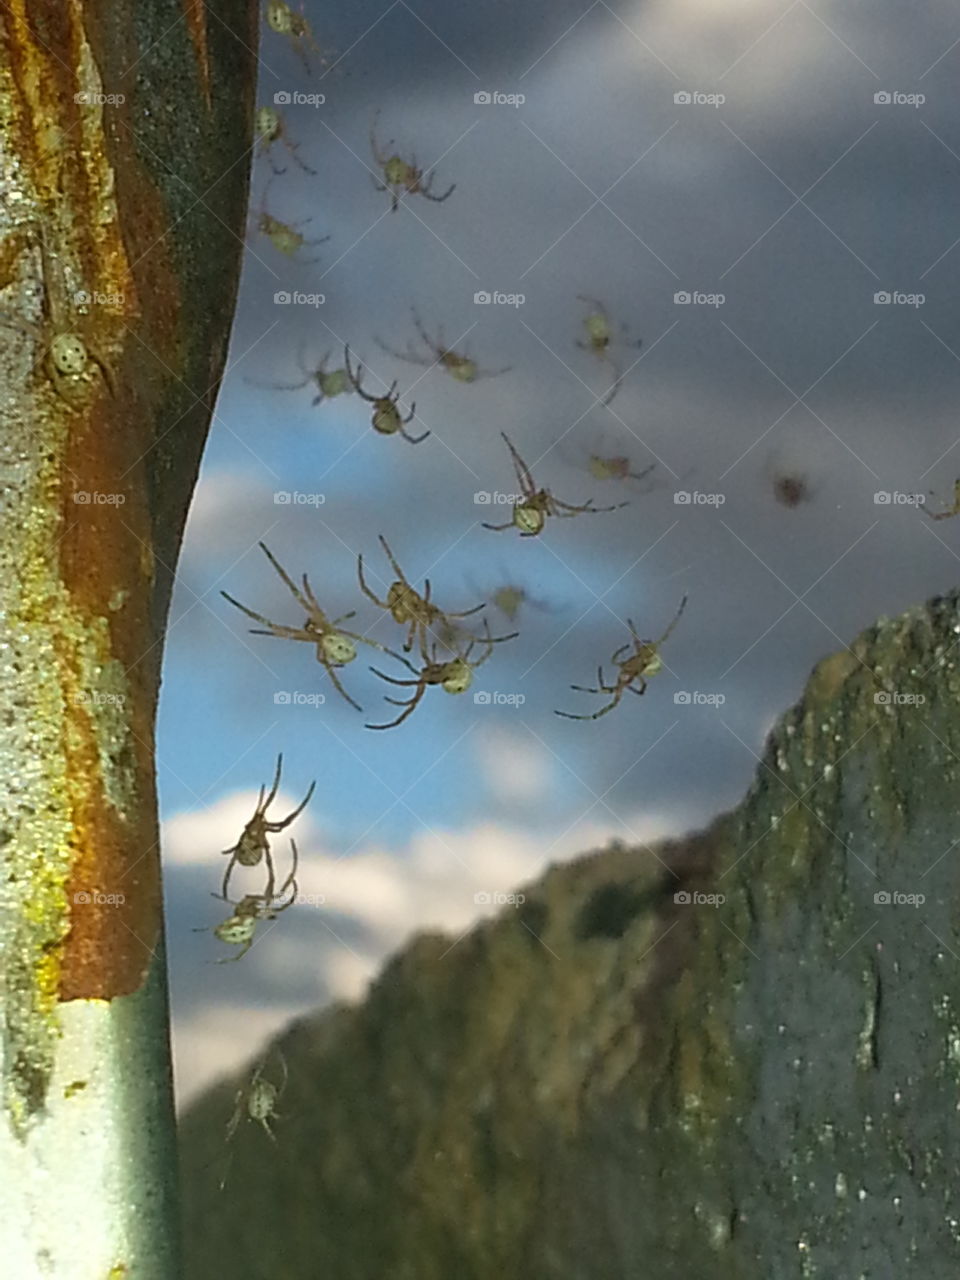 spider hatchlings take flight